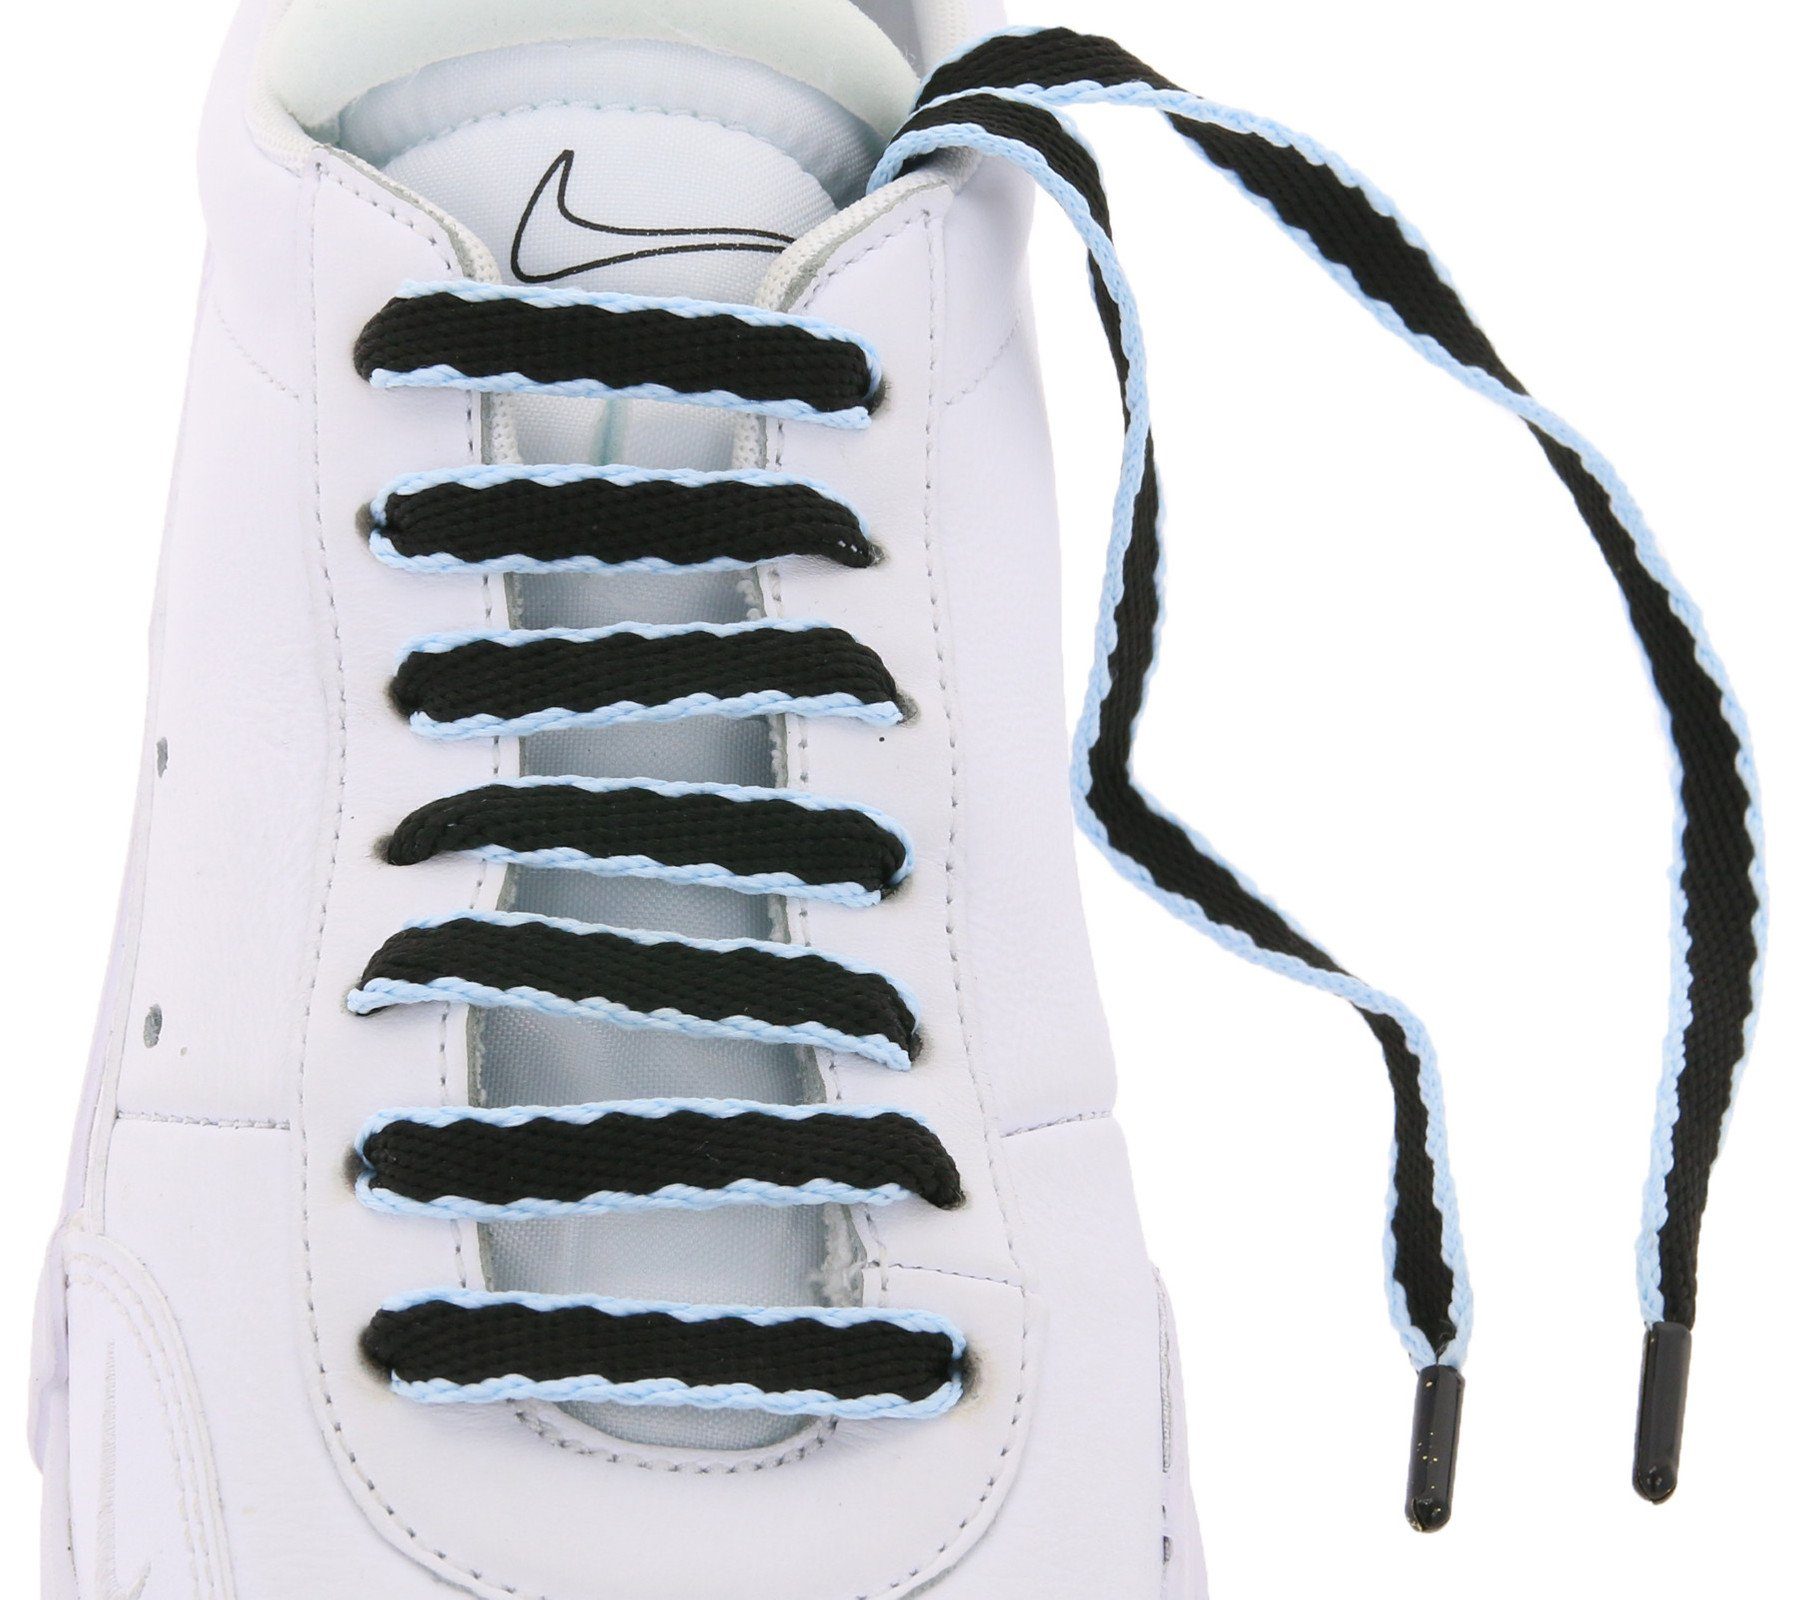 Schuhe Schnürsenkel TubeLaces zweifarbige Tubelaces Schnürbänder Schwarz/Hellblau Schnürsenkel Schuhbänder